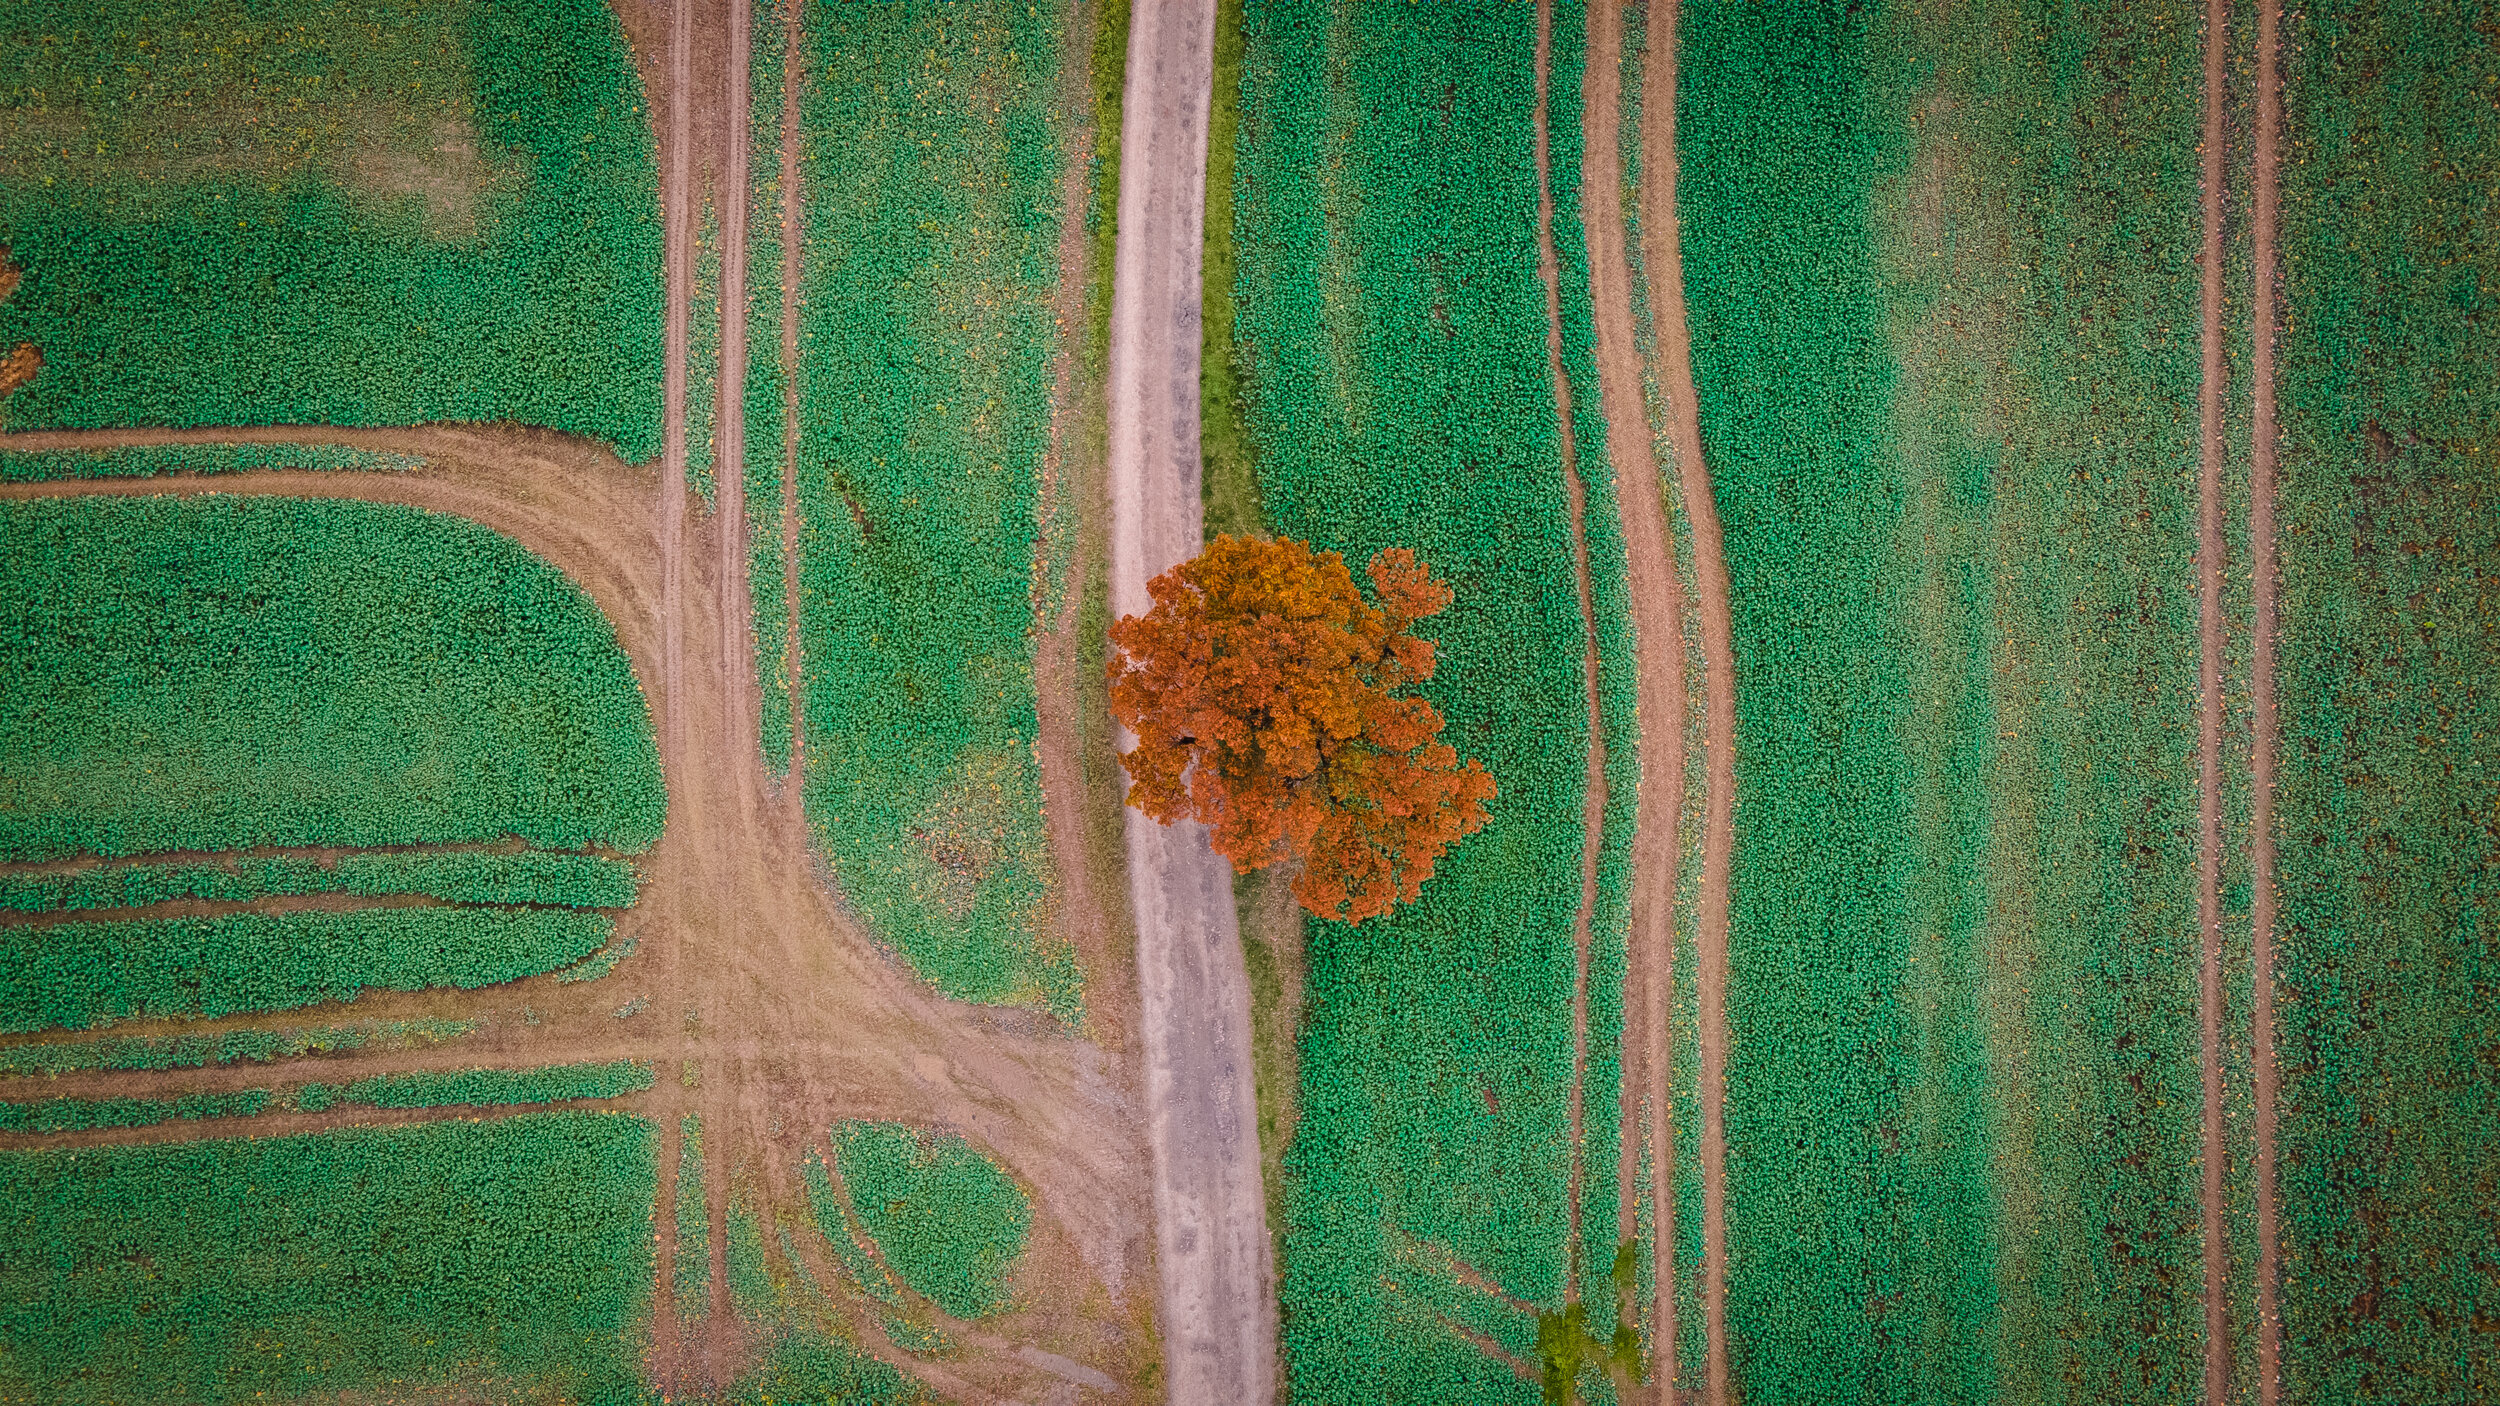 Tree in a field 2/2 